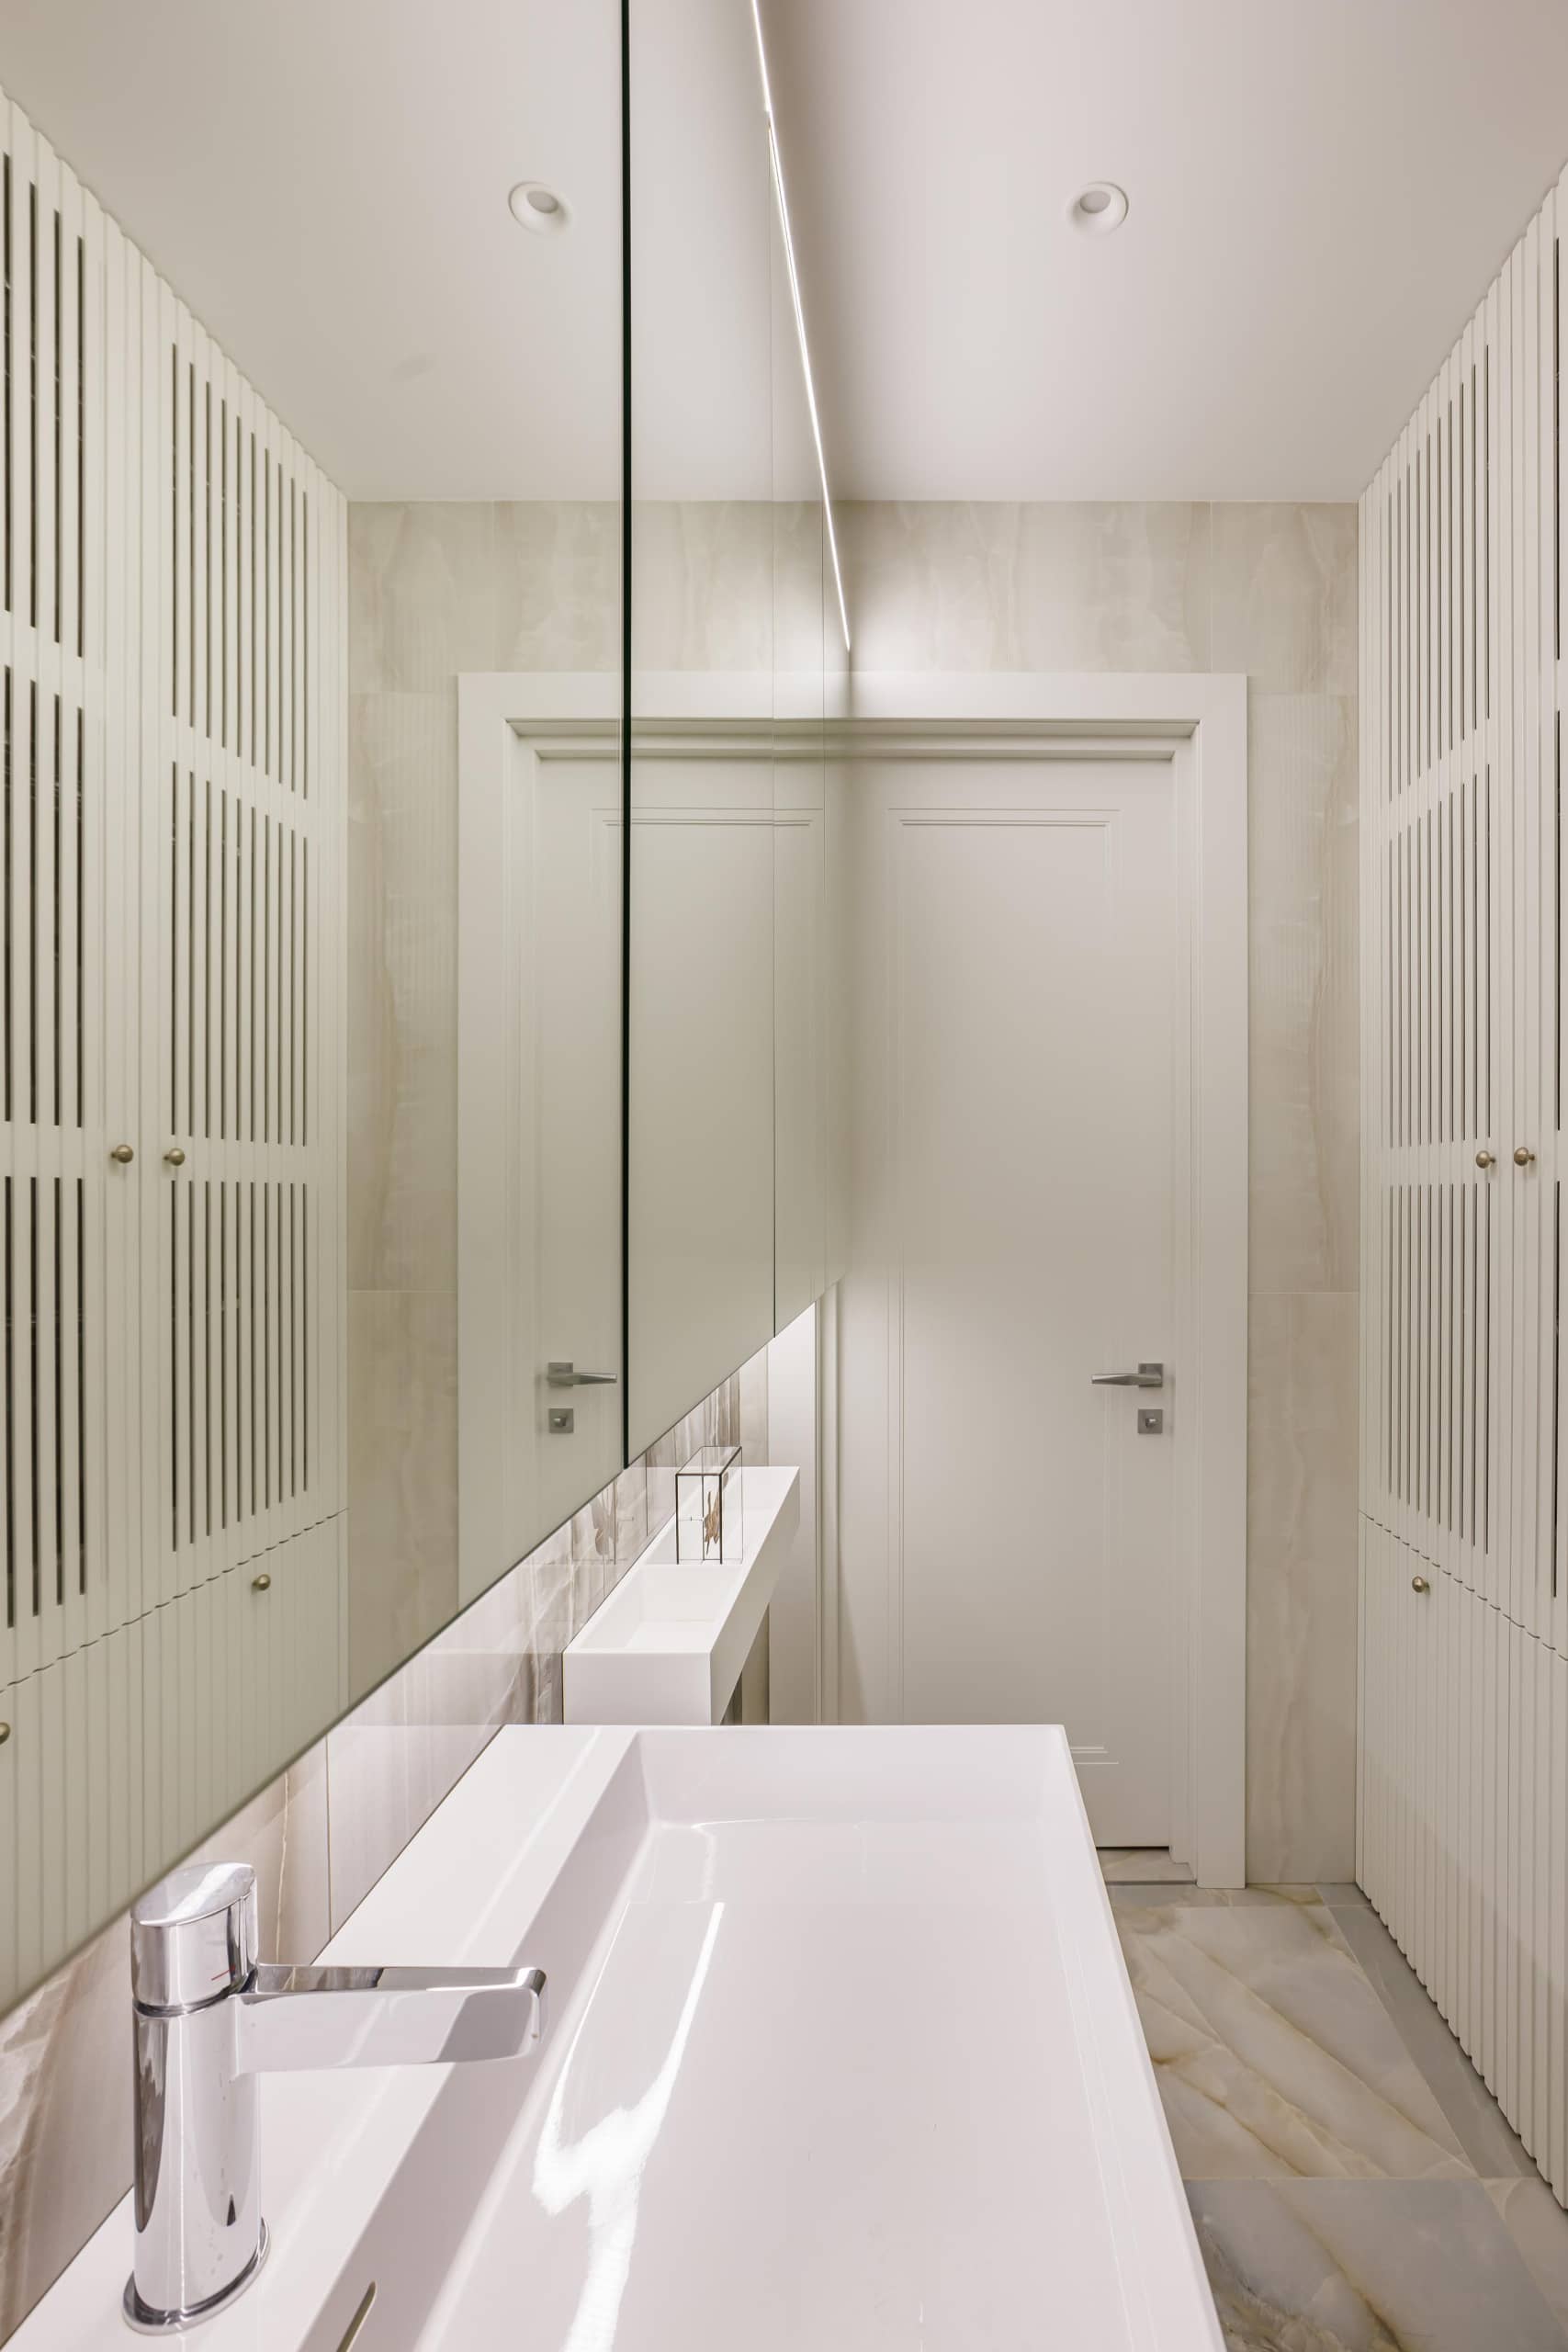 Оформление интерьера ванной комнаты в белый цвет. Фото № 71660.